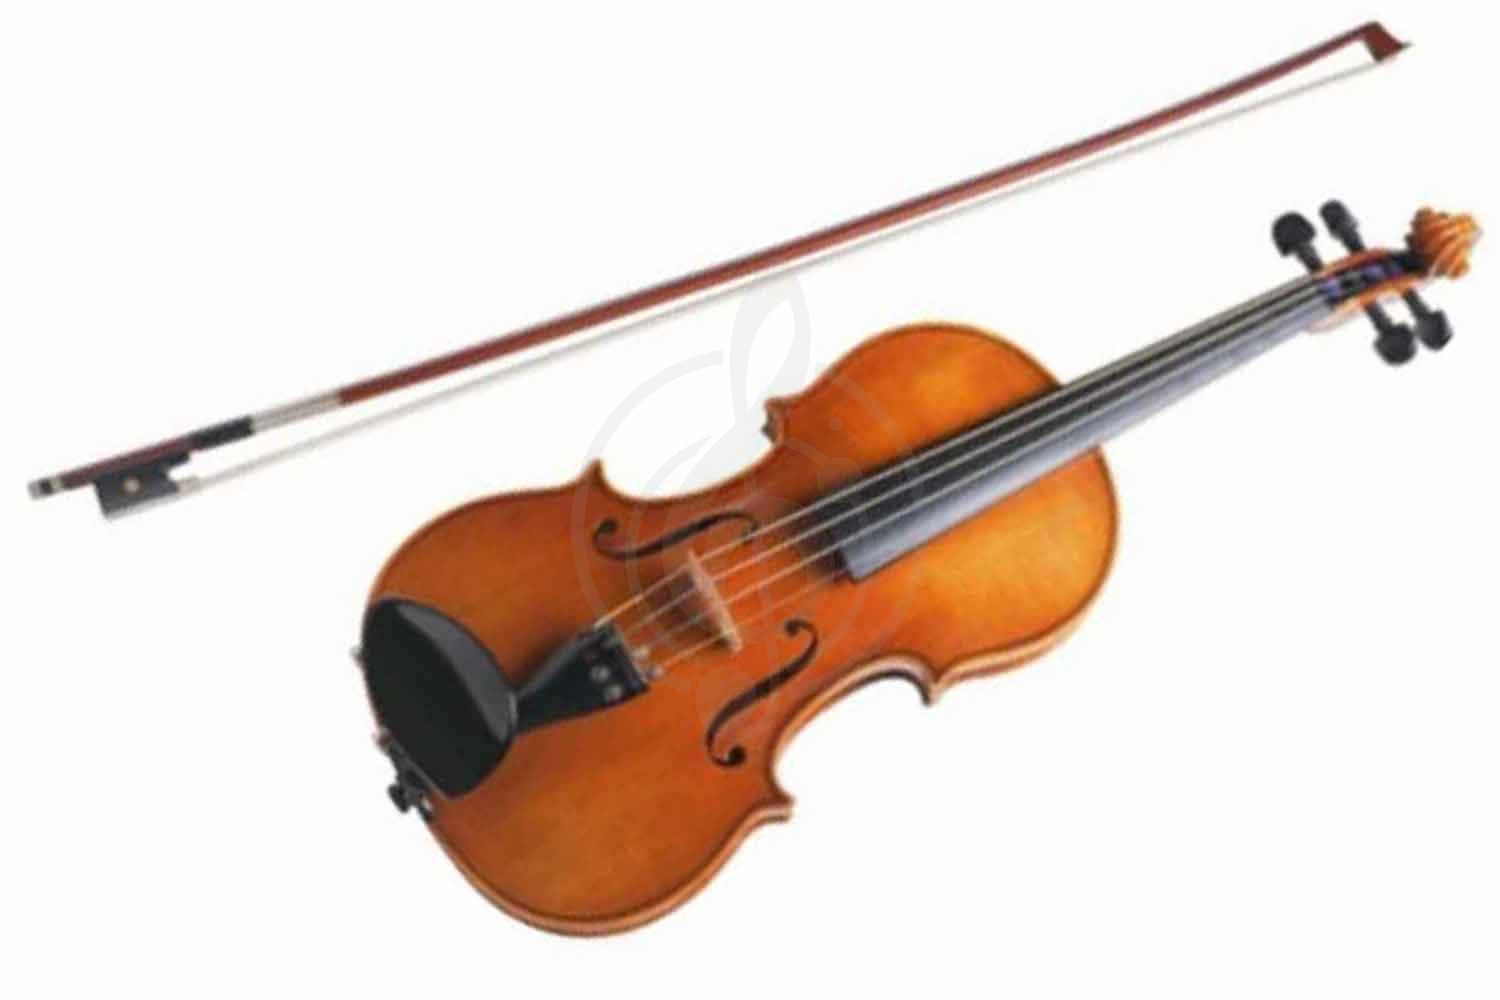 Скрипка 3/4 Скрипки 3/4 Caraya Caraya MV-002 - скрипка 3/4 с футляром и смычком MV-002 - фото 1